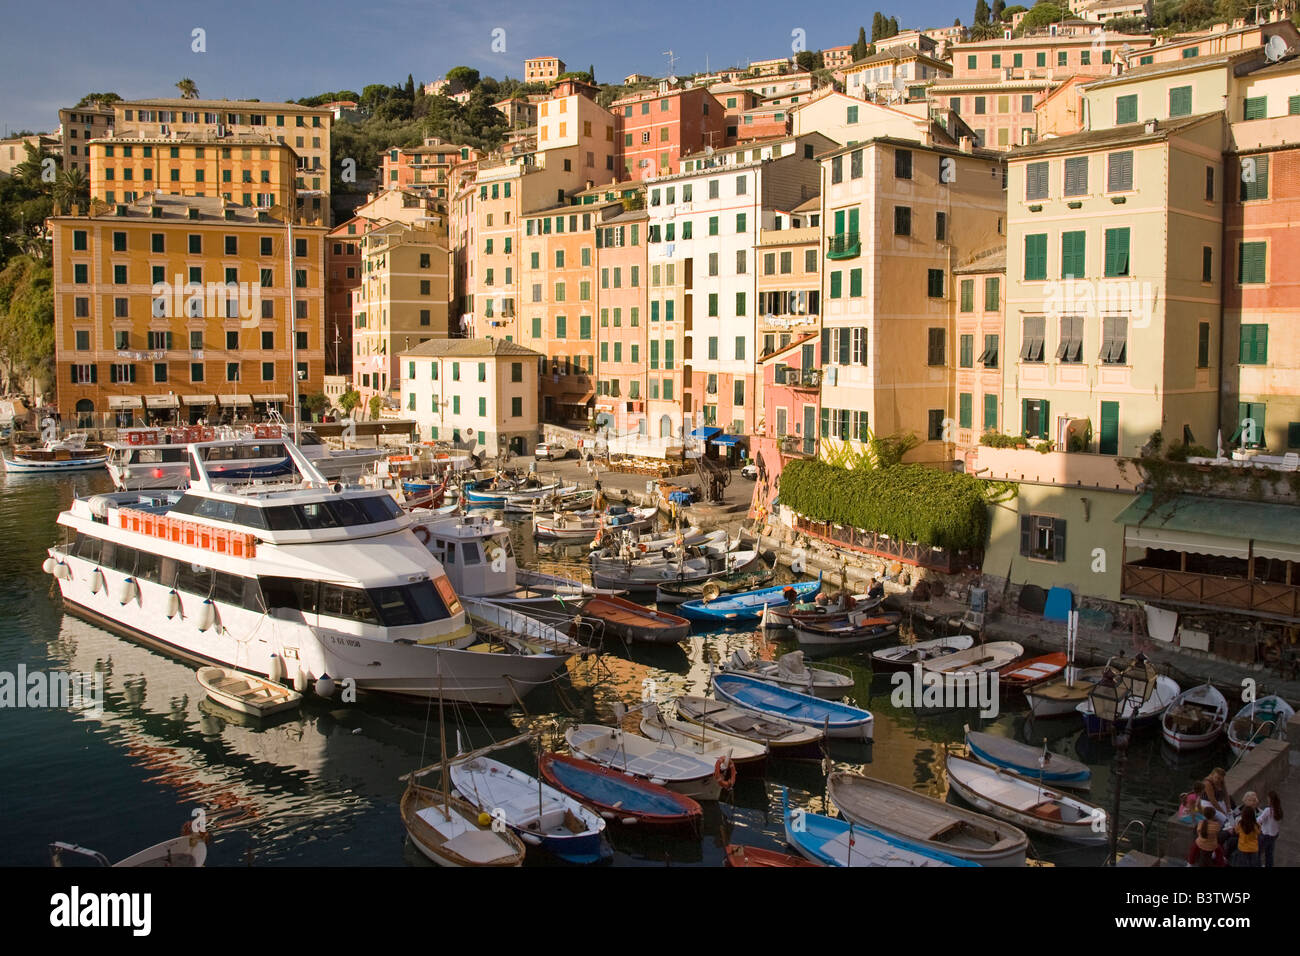 L'Europe, Italie, Camogli. Bâtiments colorés entourent le port et bateaux colorés. Banque D'Images